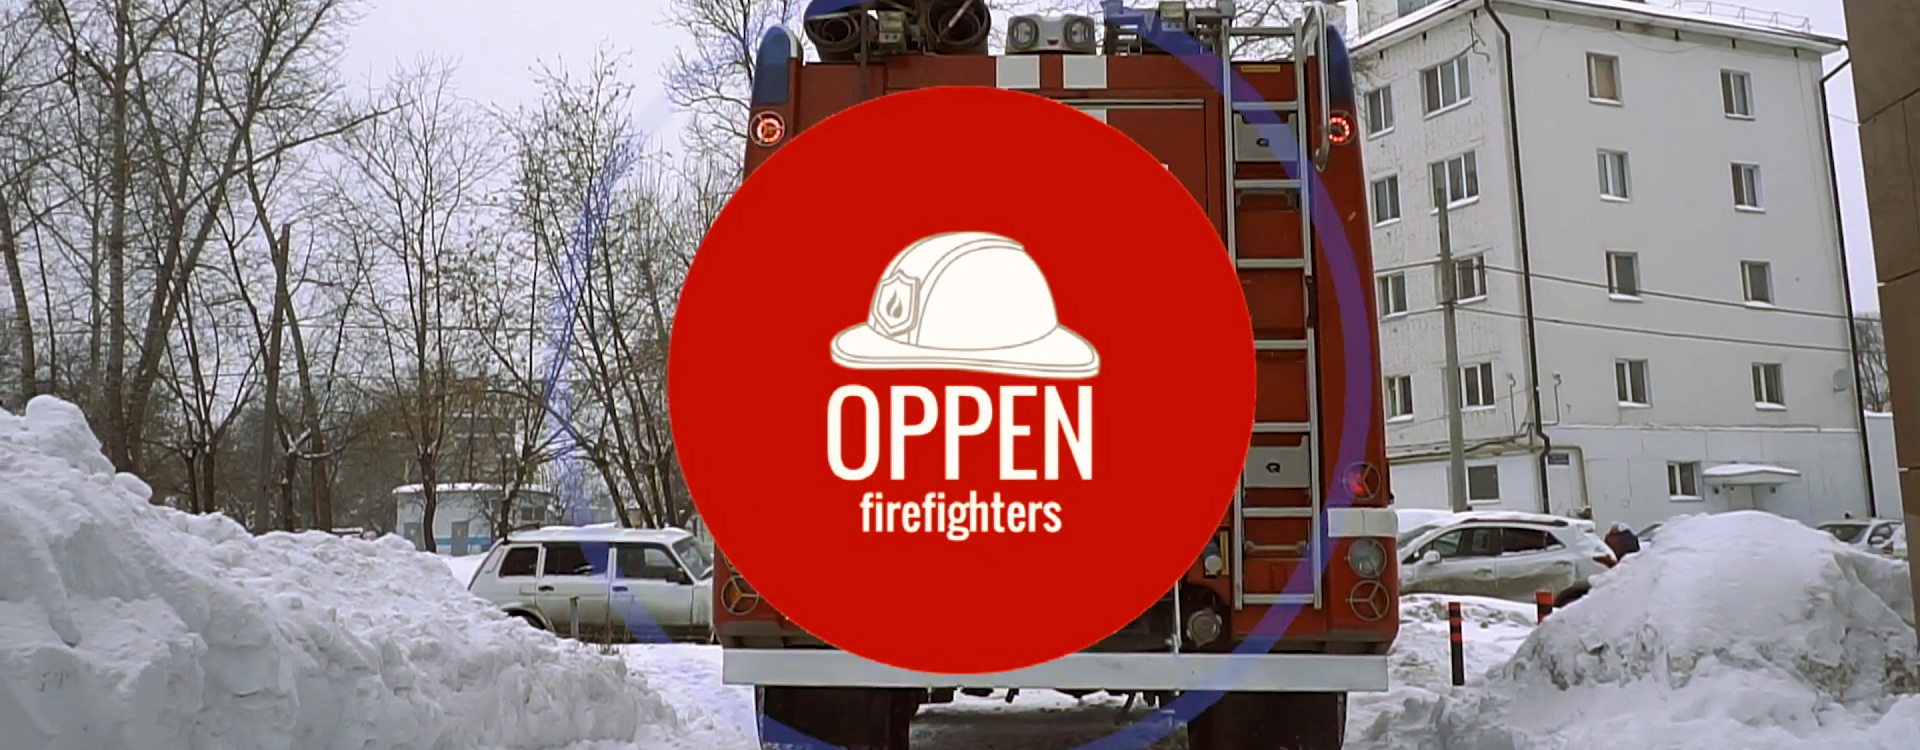 Промо-ролик Oppen для пожарных